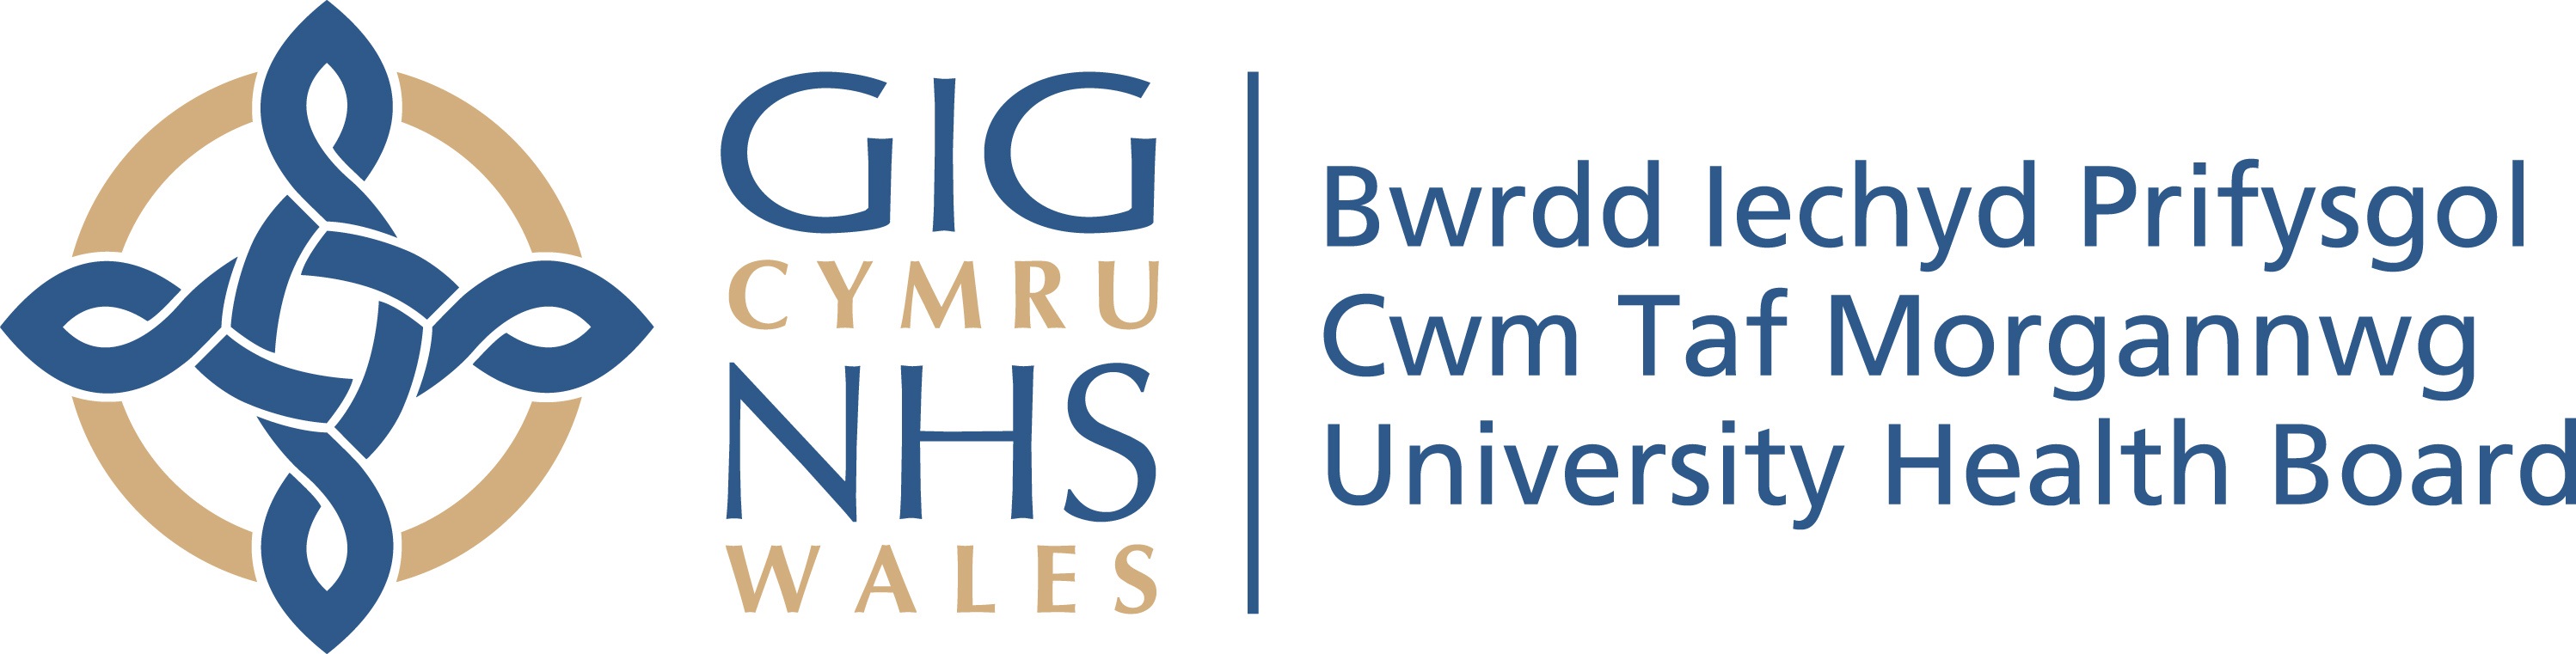 logo for Cwm Taf Morgannwg University Health Board